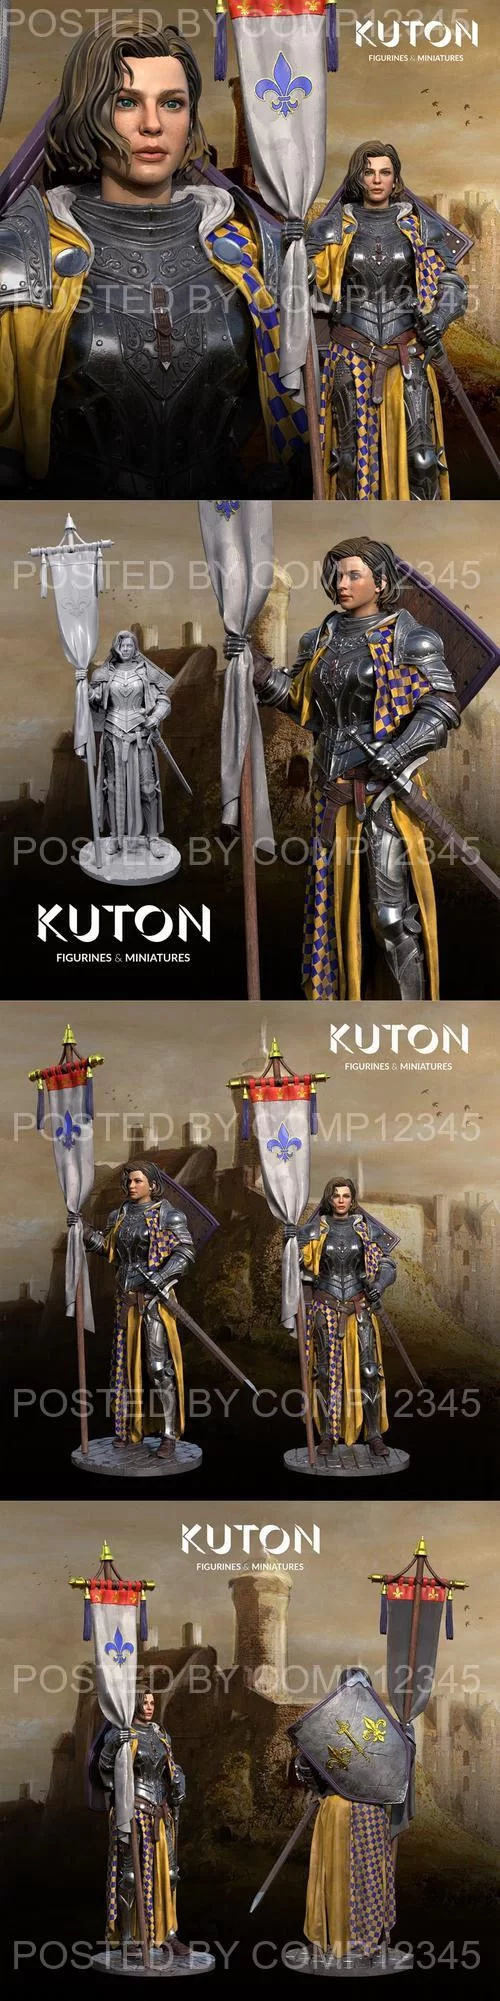 Kuton - Joan of Arc